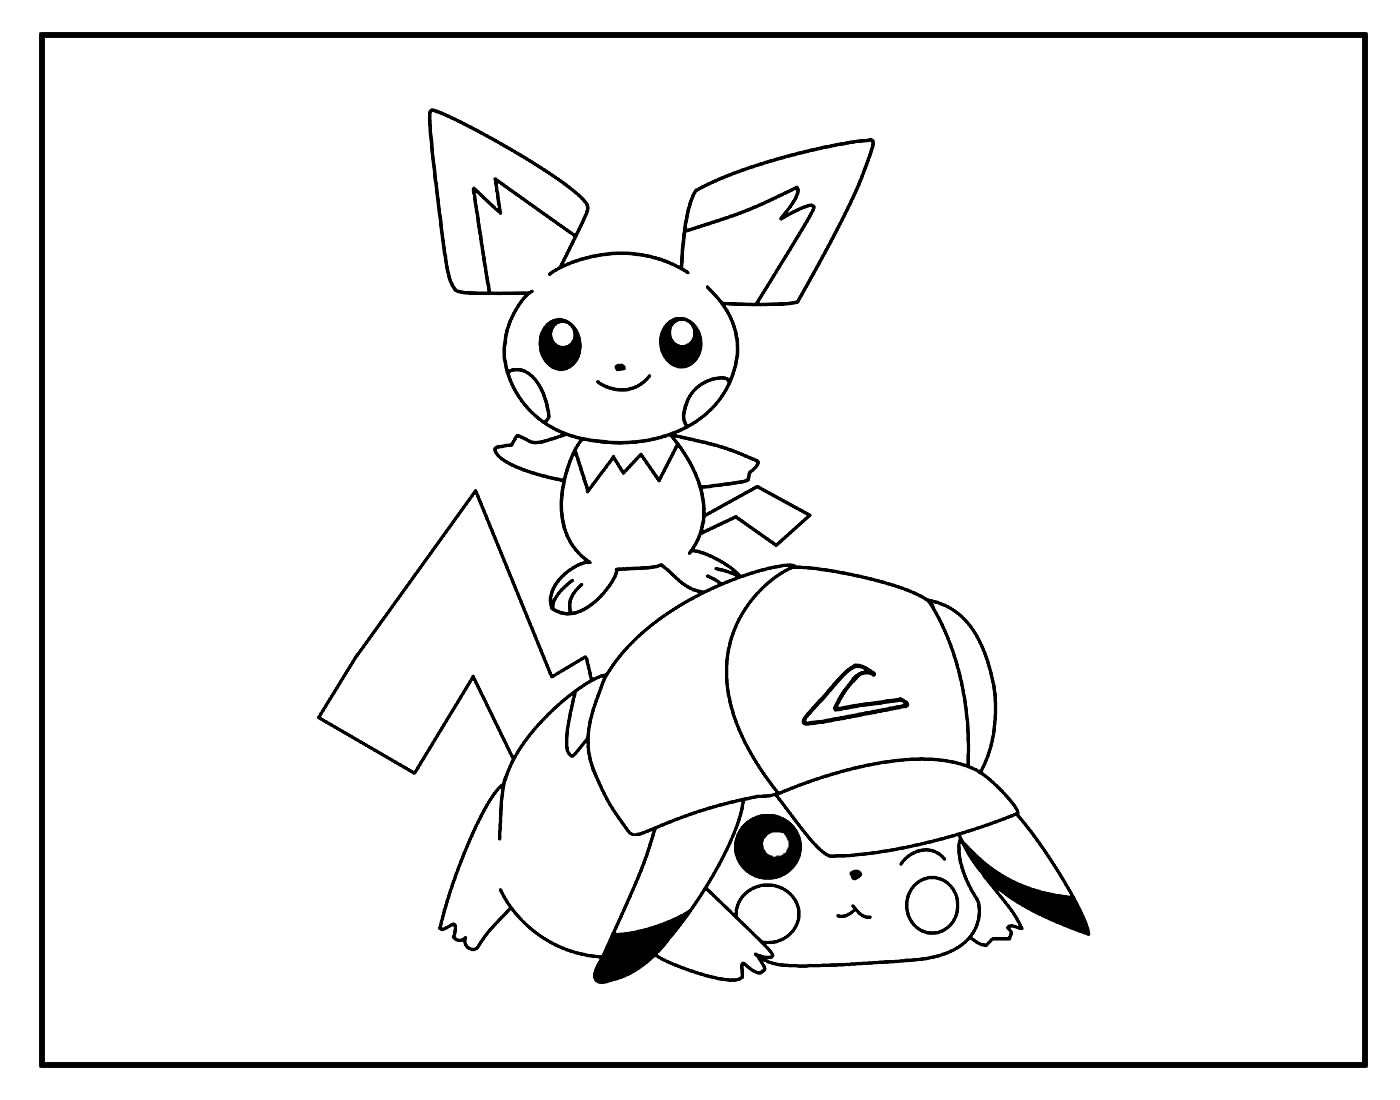 Desenho Lindo de Pikachu